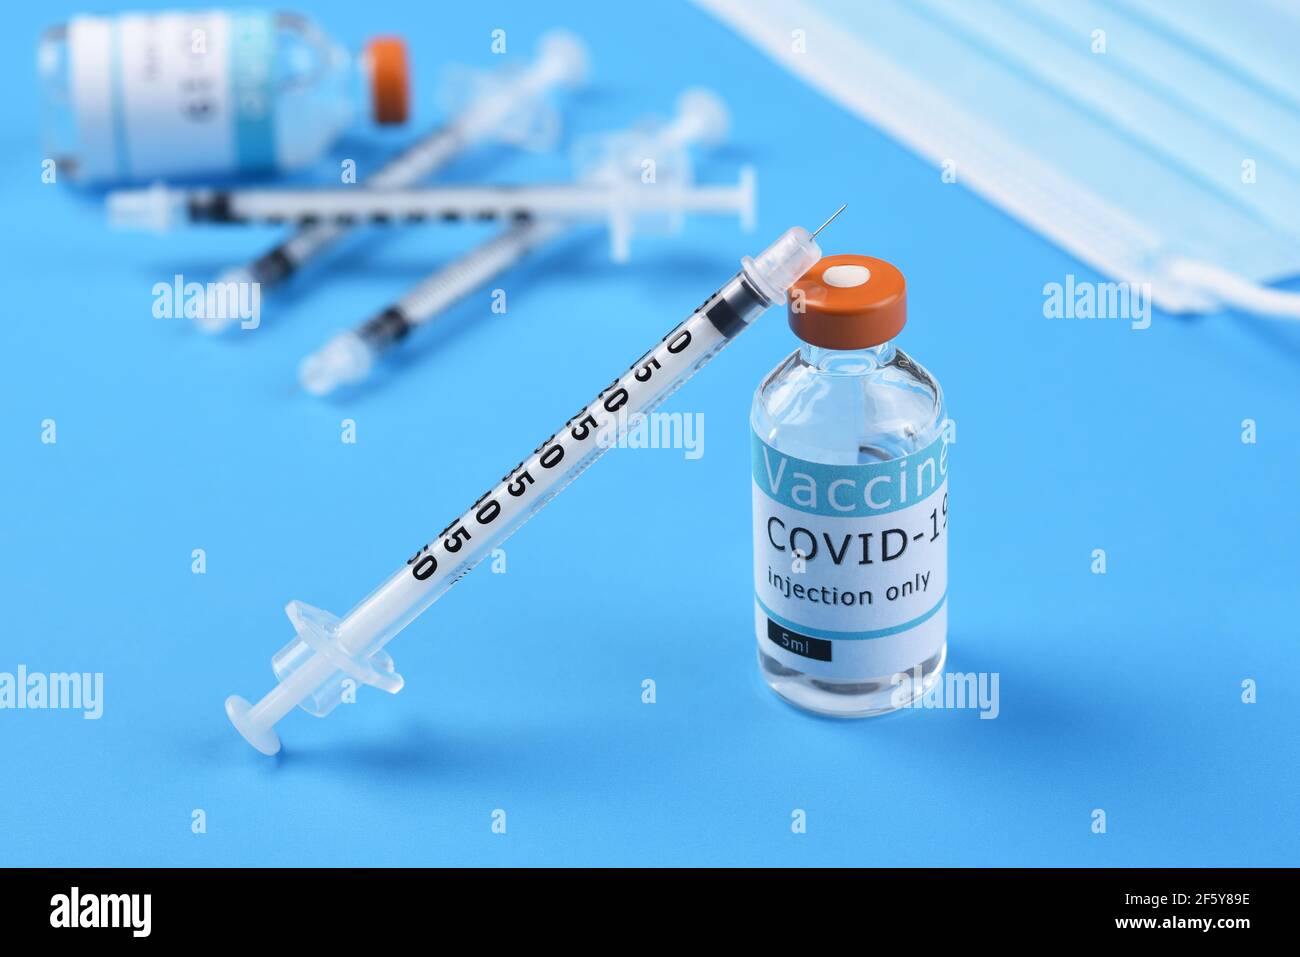 Un flacon de vaccin Covid-19 avec une seringue penchée sur le flacon avec plus de seringues, un flacon et un masque chirurgical en arrière-plan. Banque D'Images